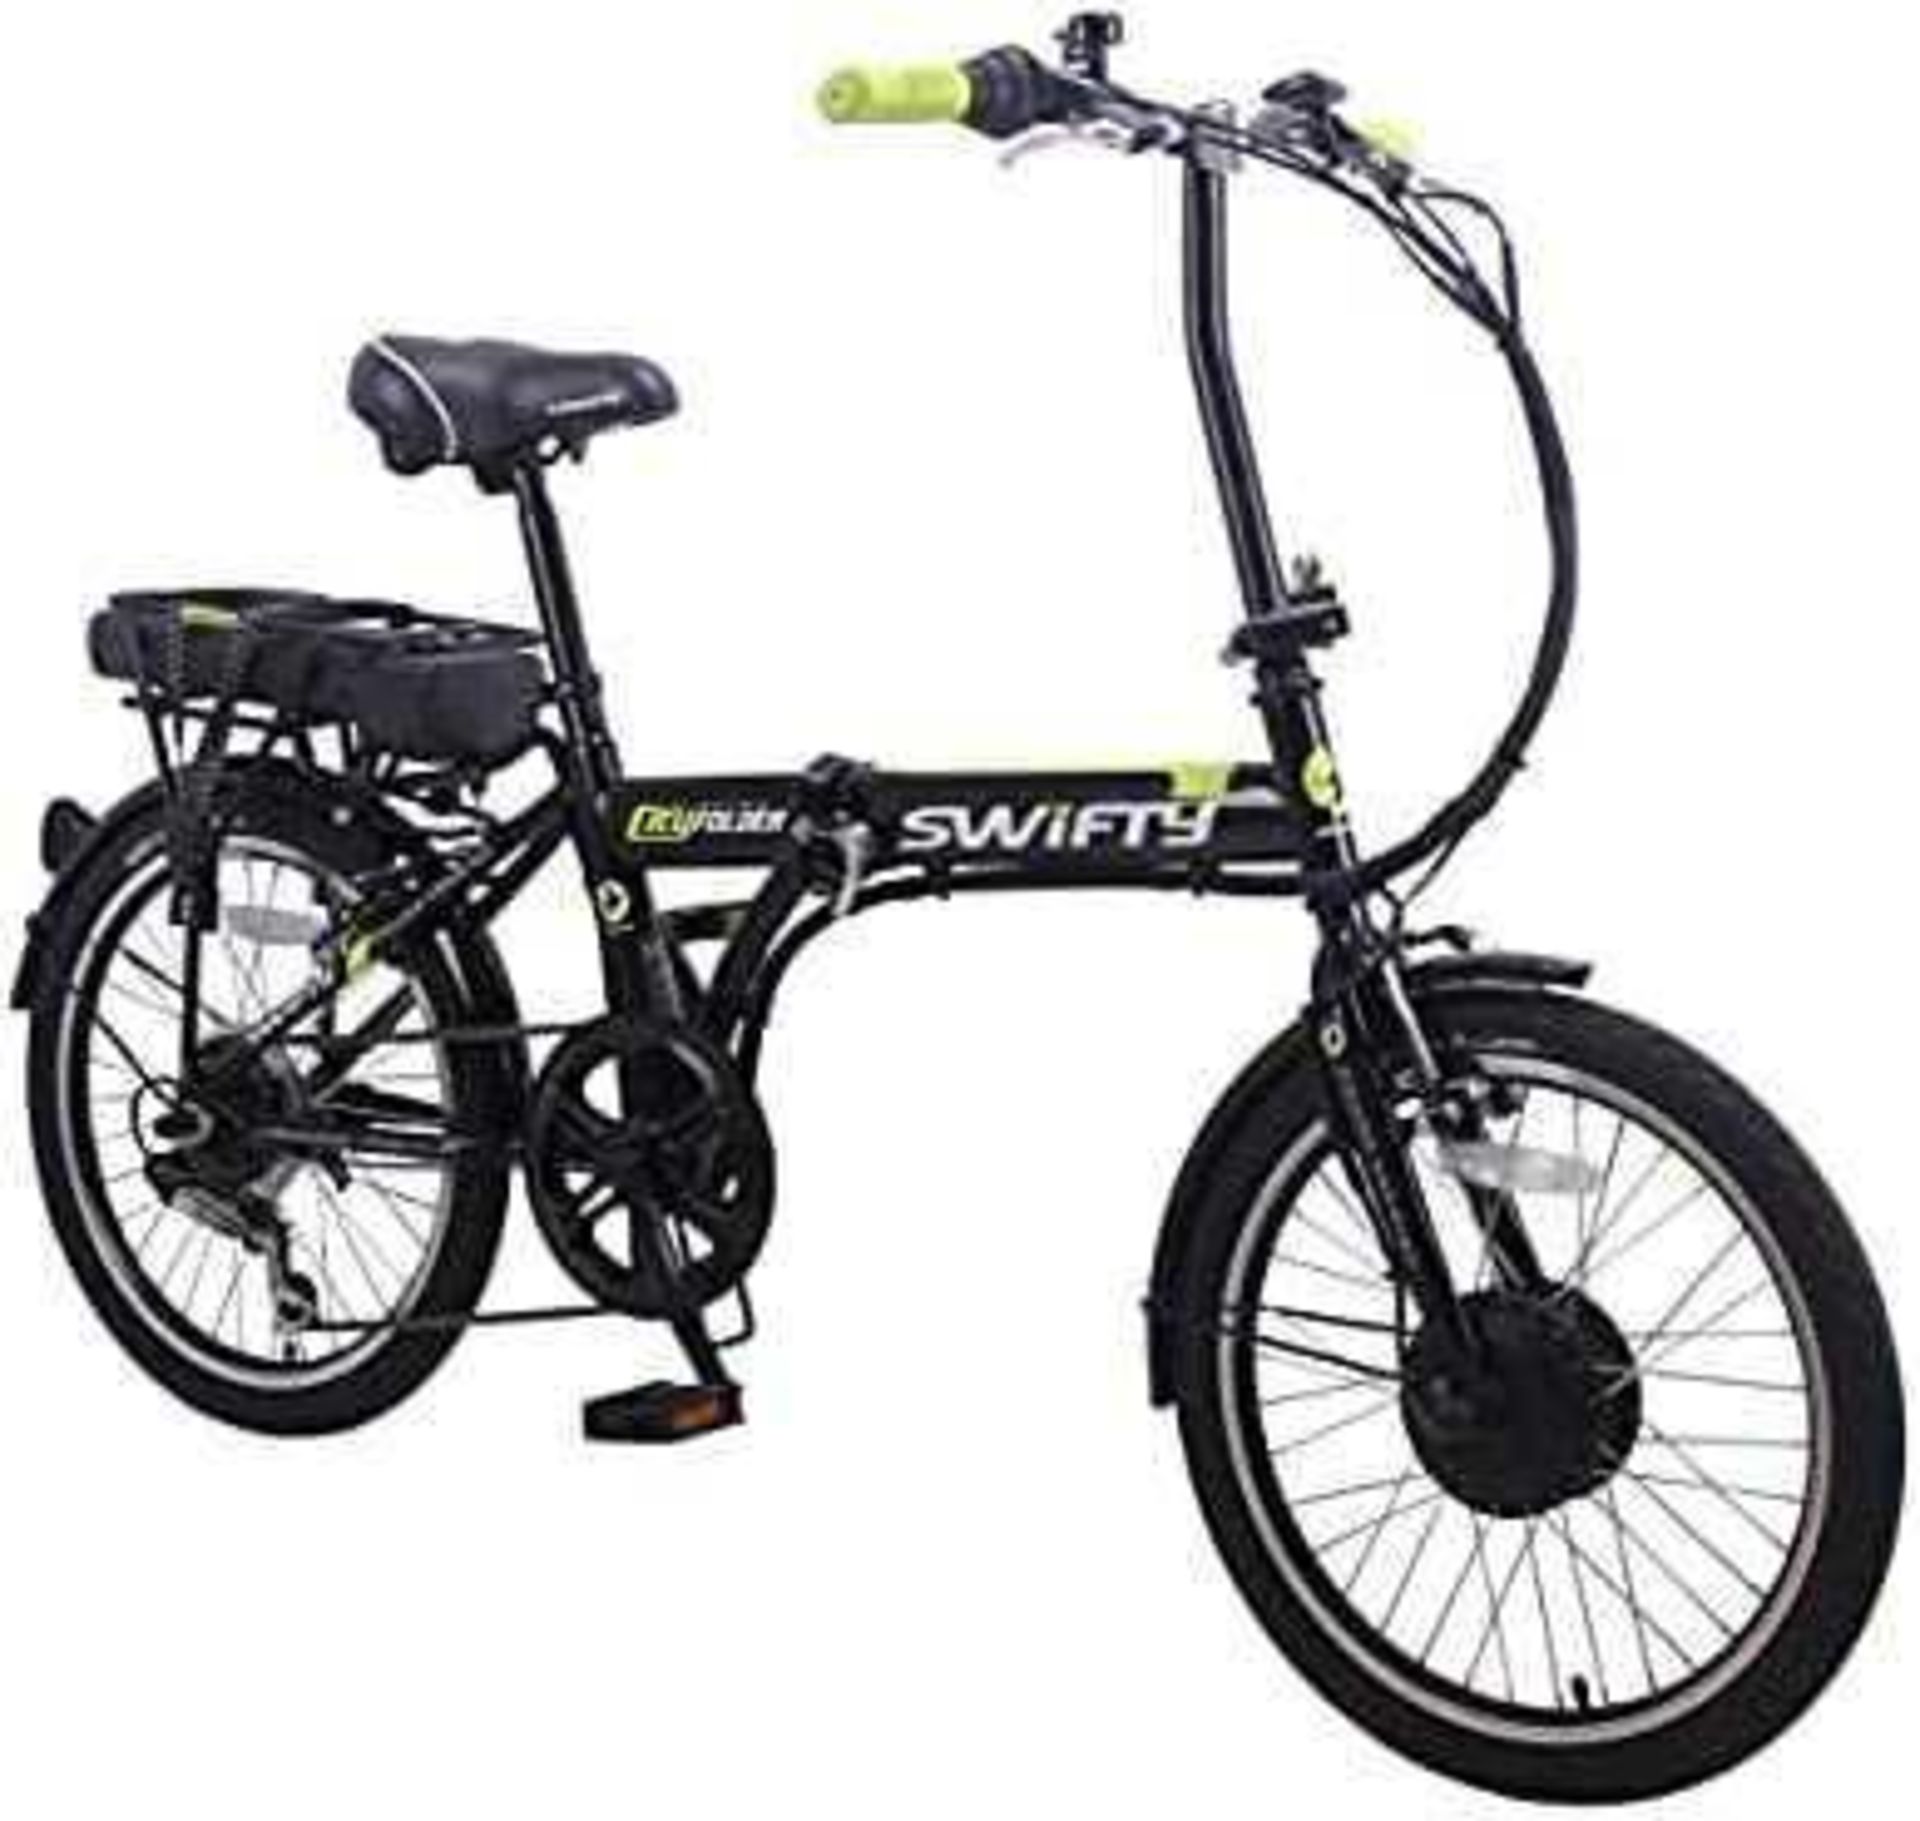 RRP £700 Boxed Swifty 20" Wheel Folder Bike Black/Silver(New)